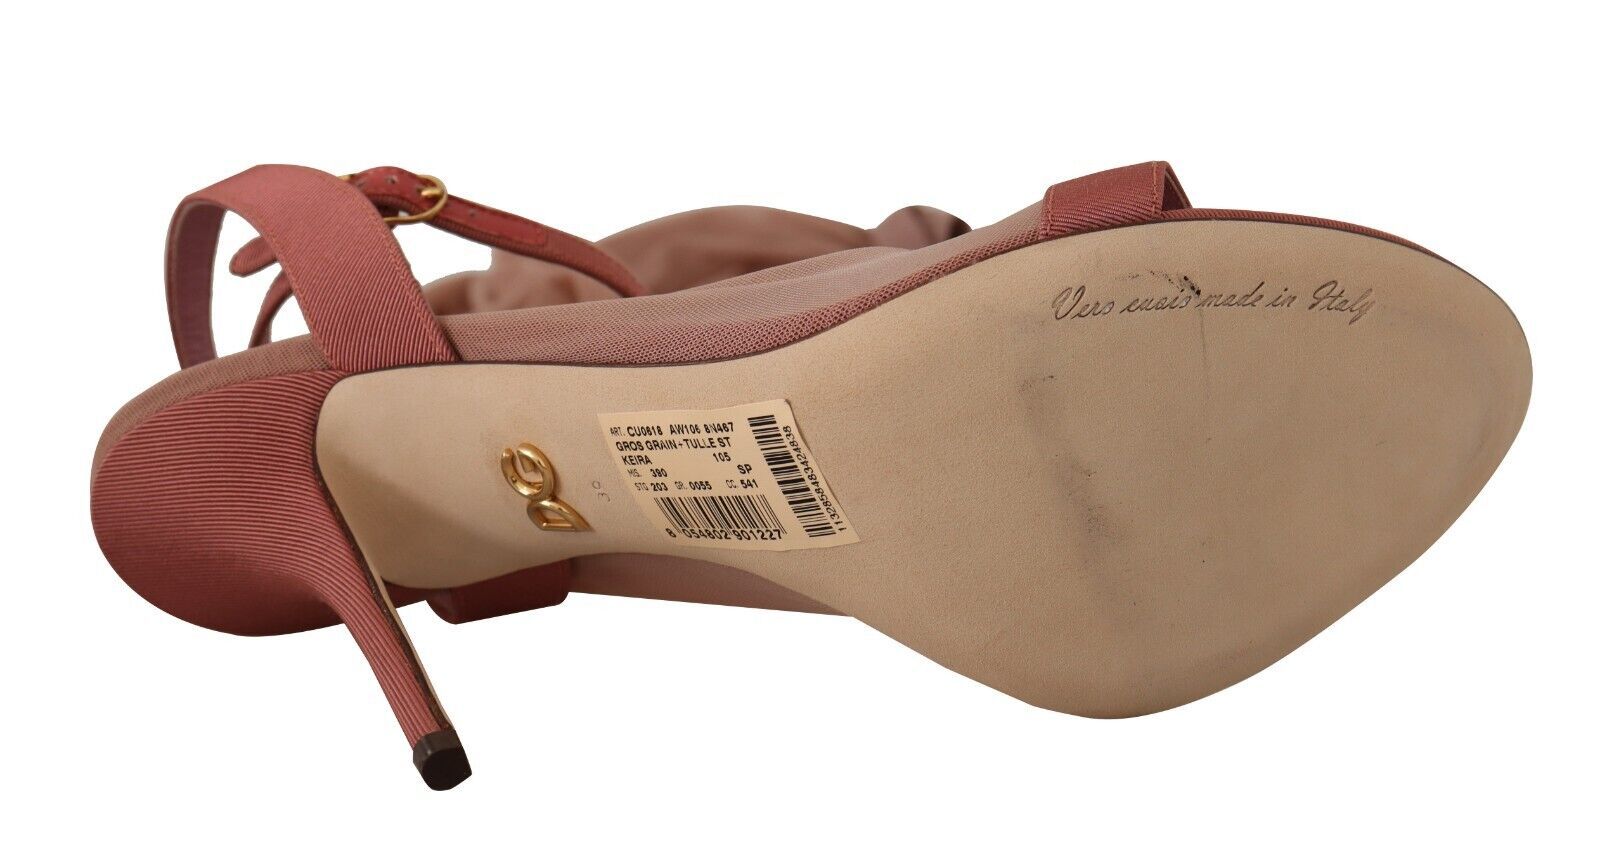 Dolce & Gabbana Elegant Pink Ankle Strap Heels Sandals